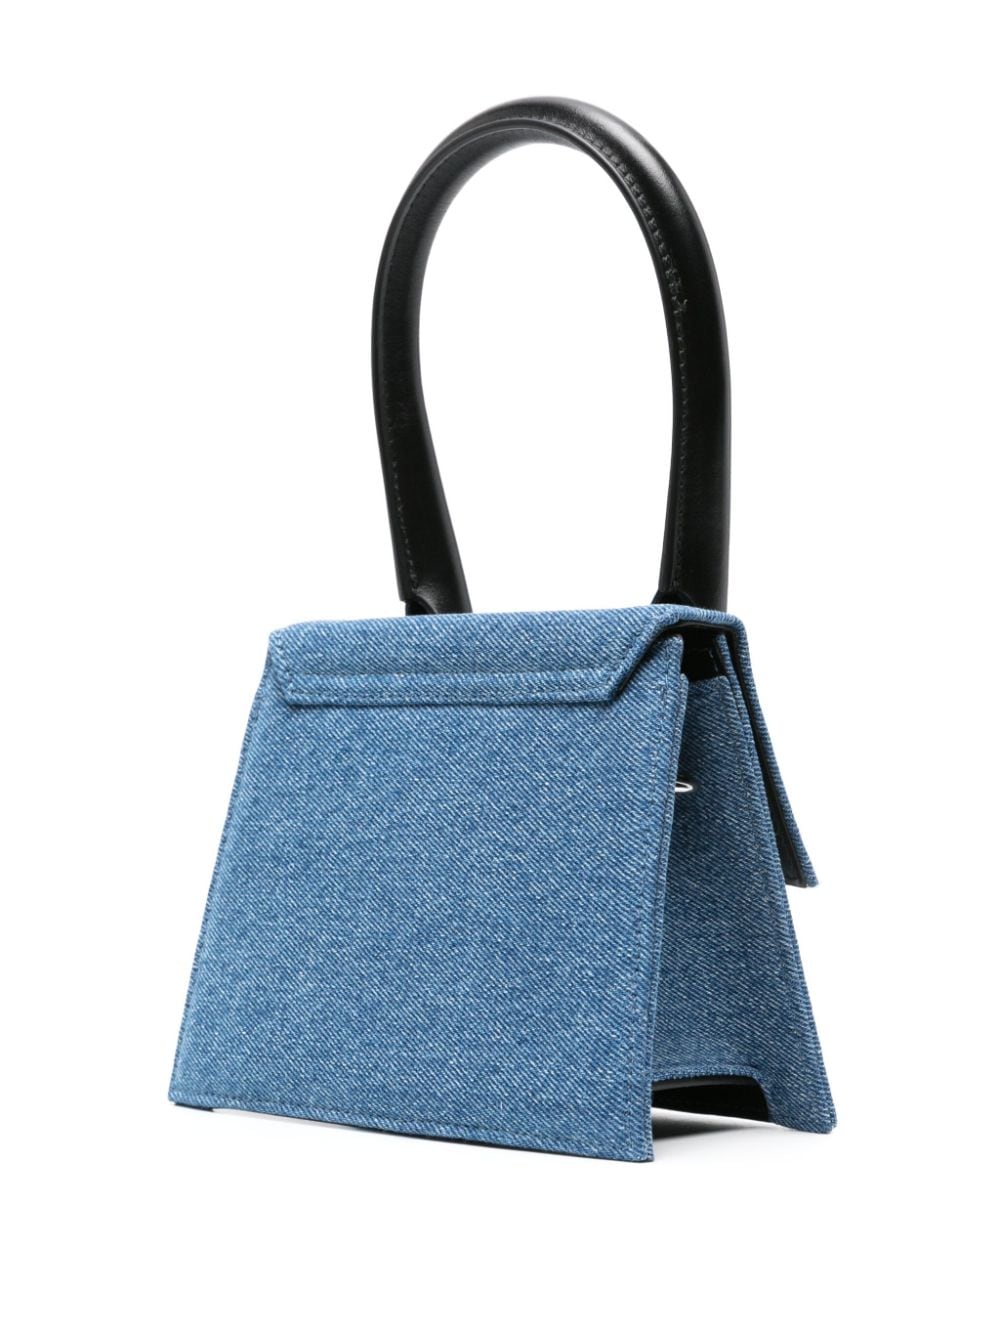 حقيبة يد نساؗية باللون الأزرق الكحلي متوسطة الحجم مع إكسسوارات فضية